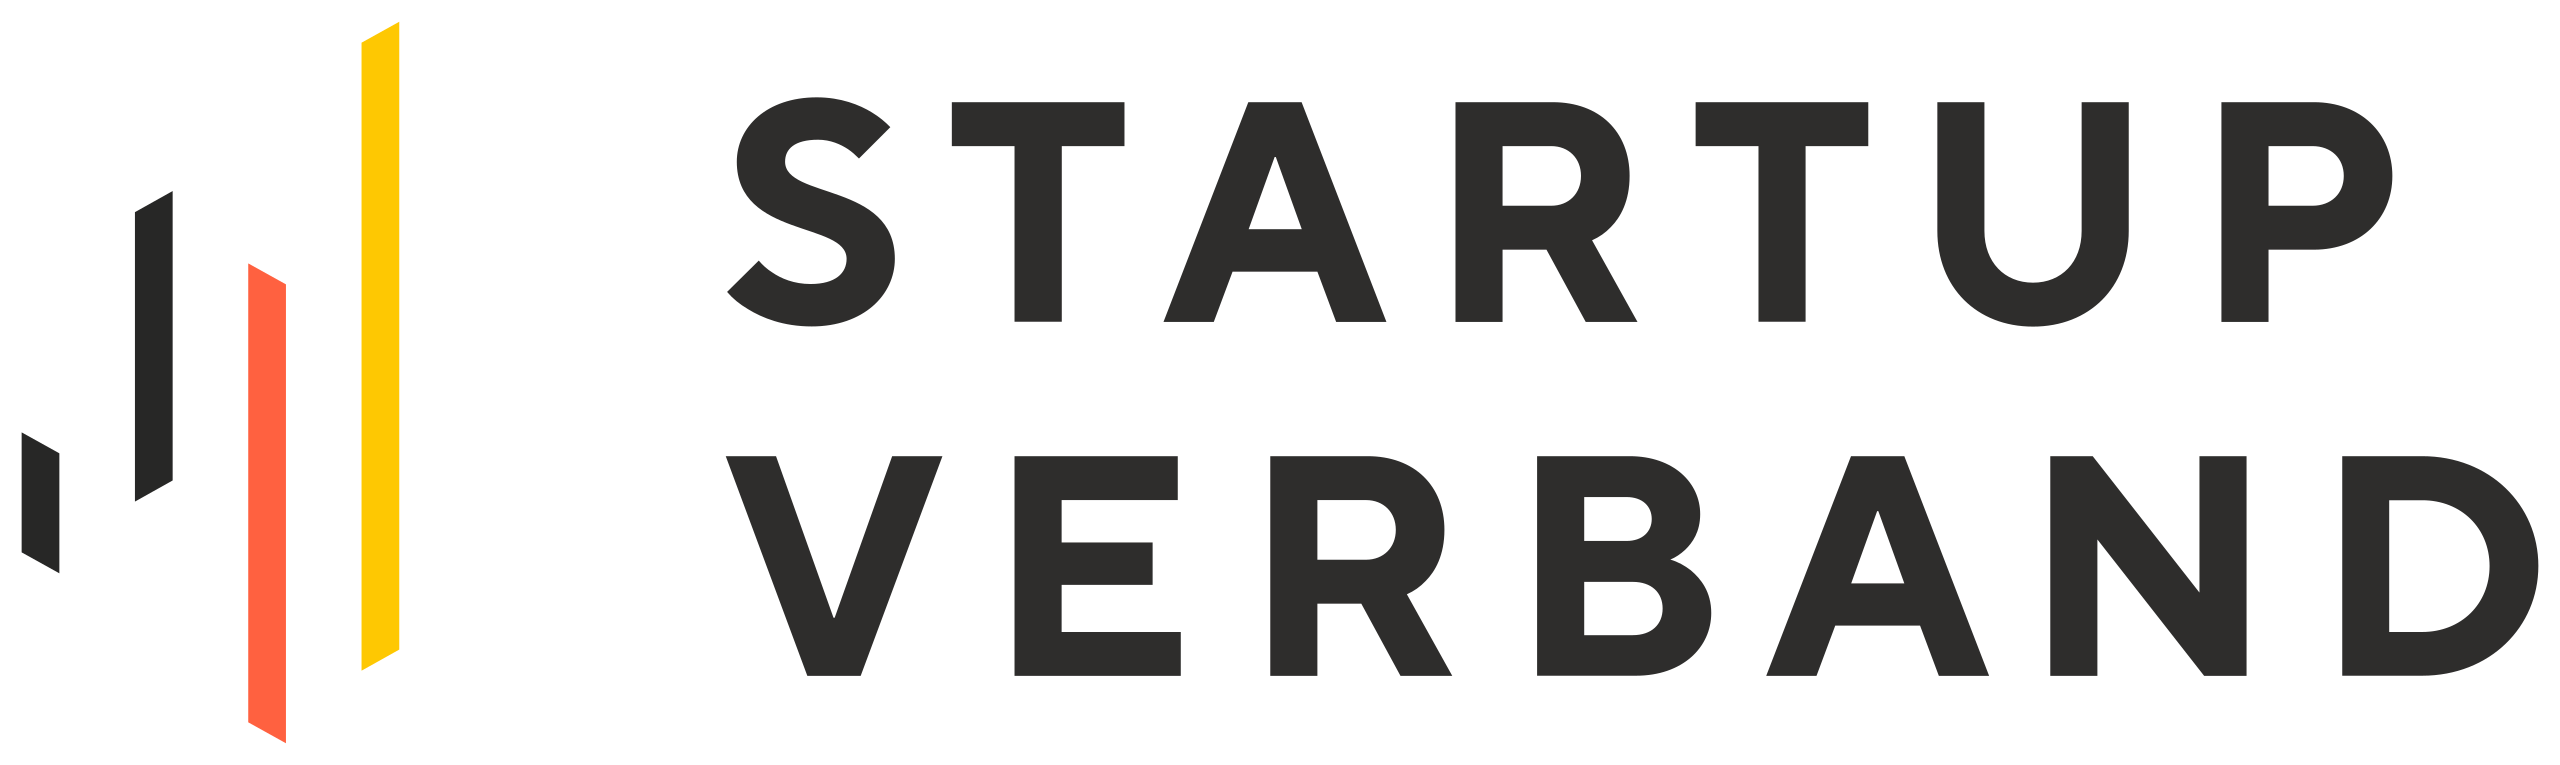 Bundesverband_Deutsche_Startups_logo.svg